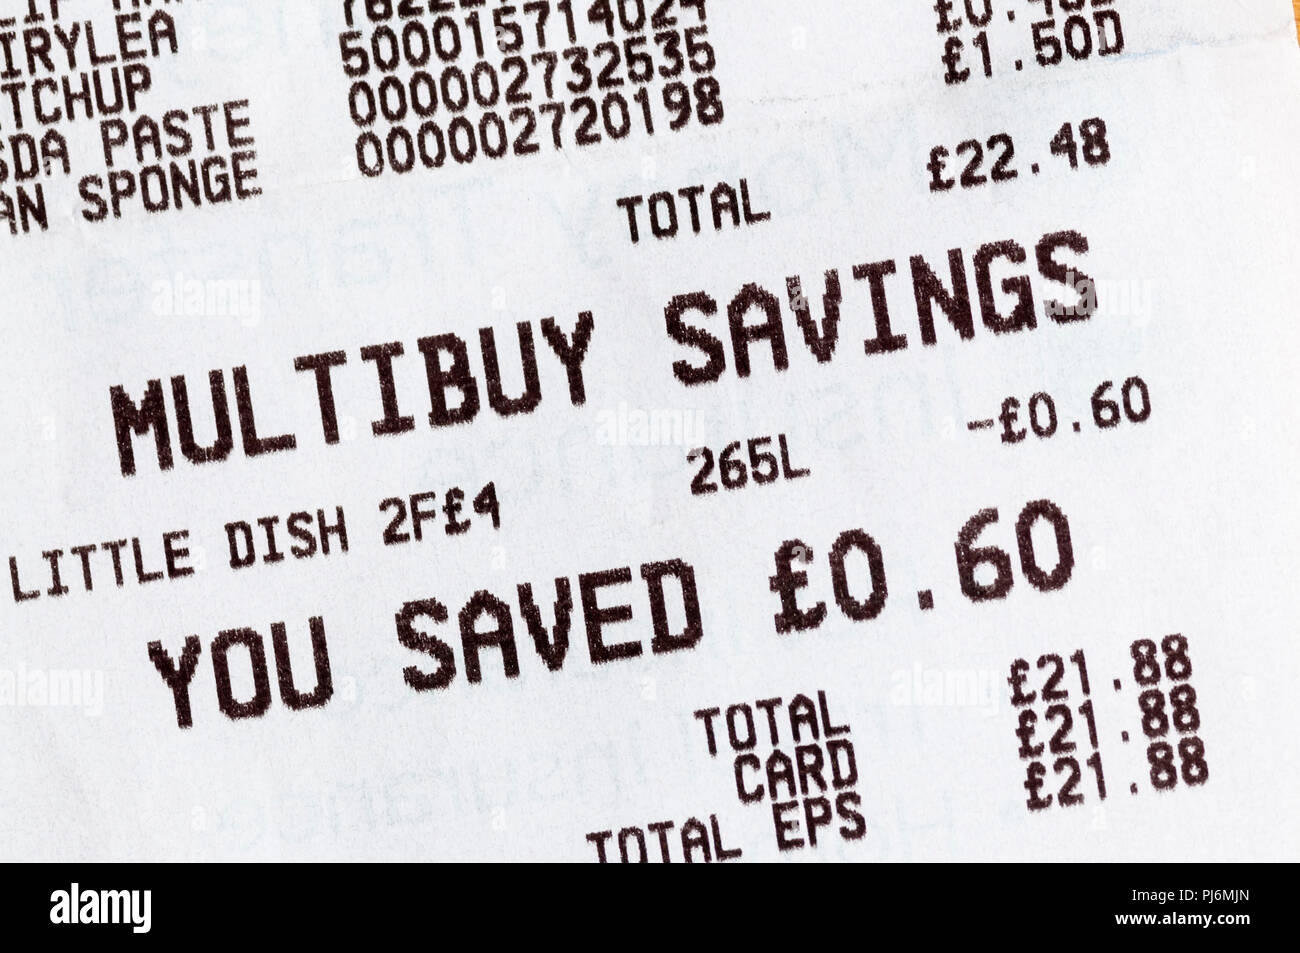 La cantidad de ahorros Multibuy enumerados en un supermercado hasta la recepción. Foto de stock